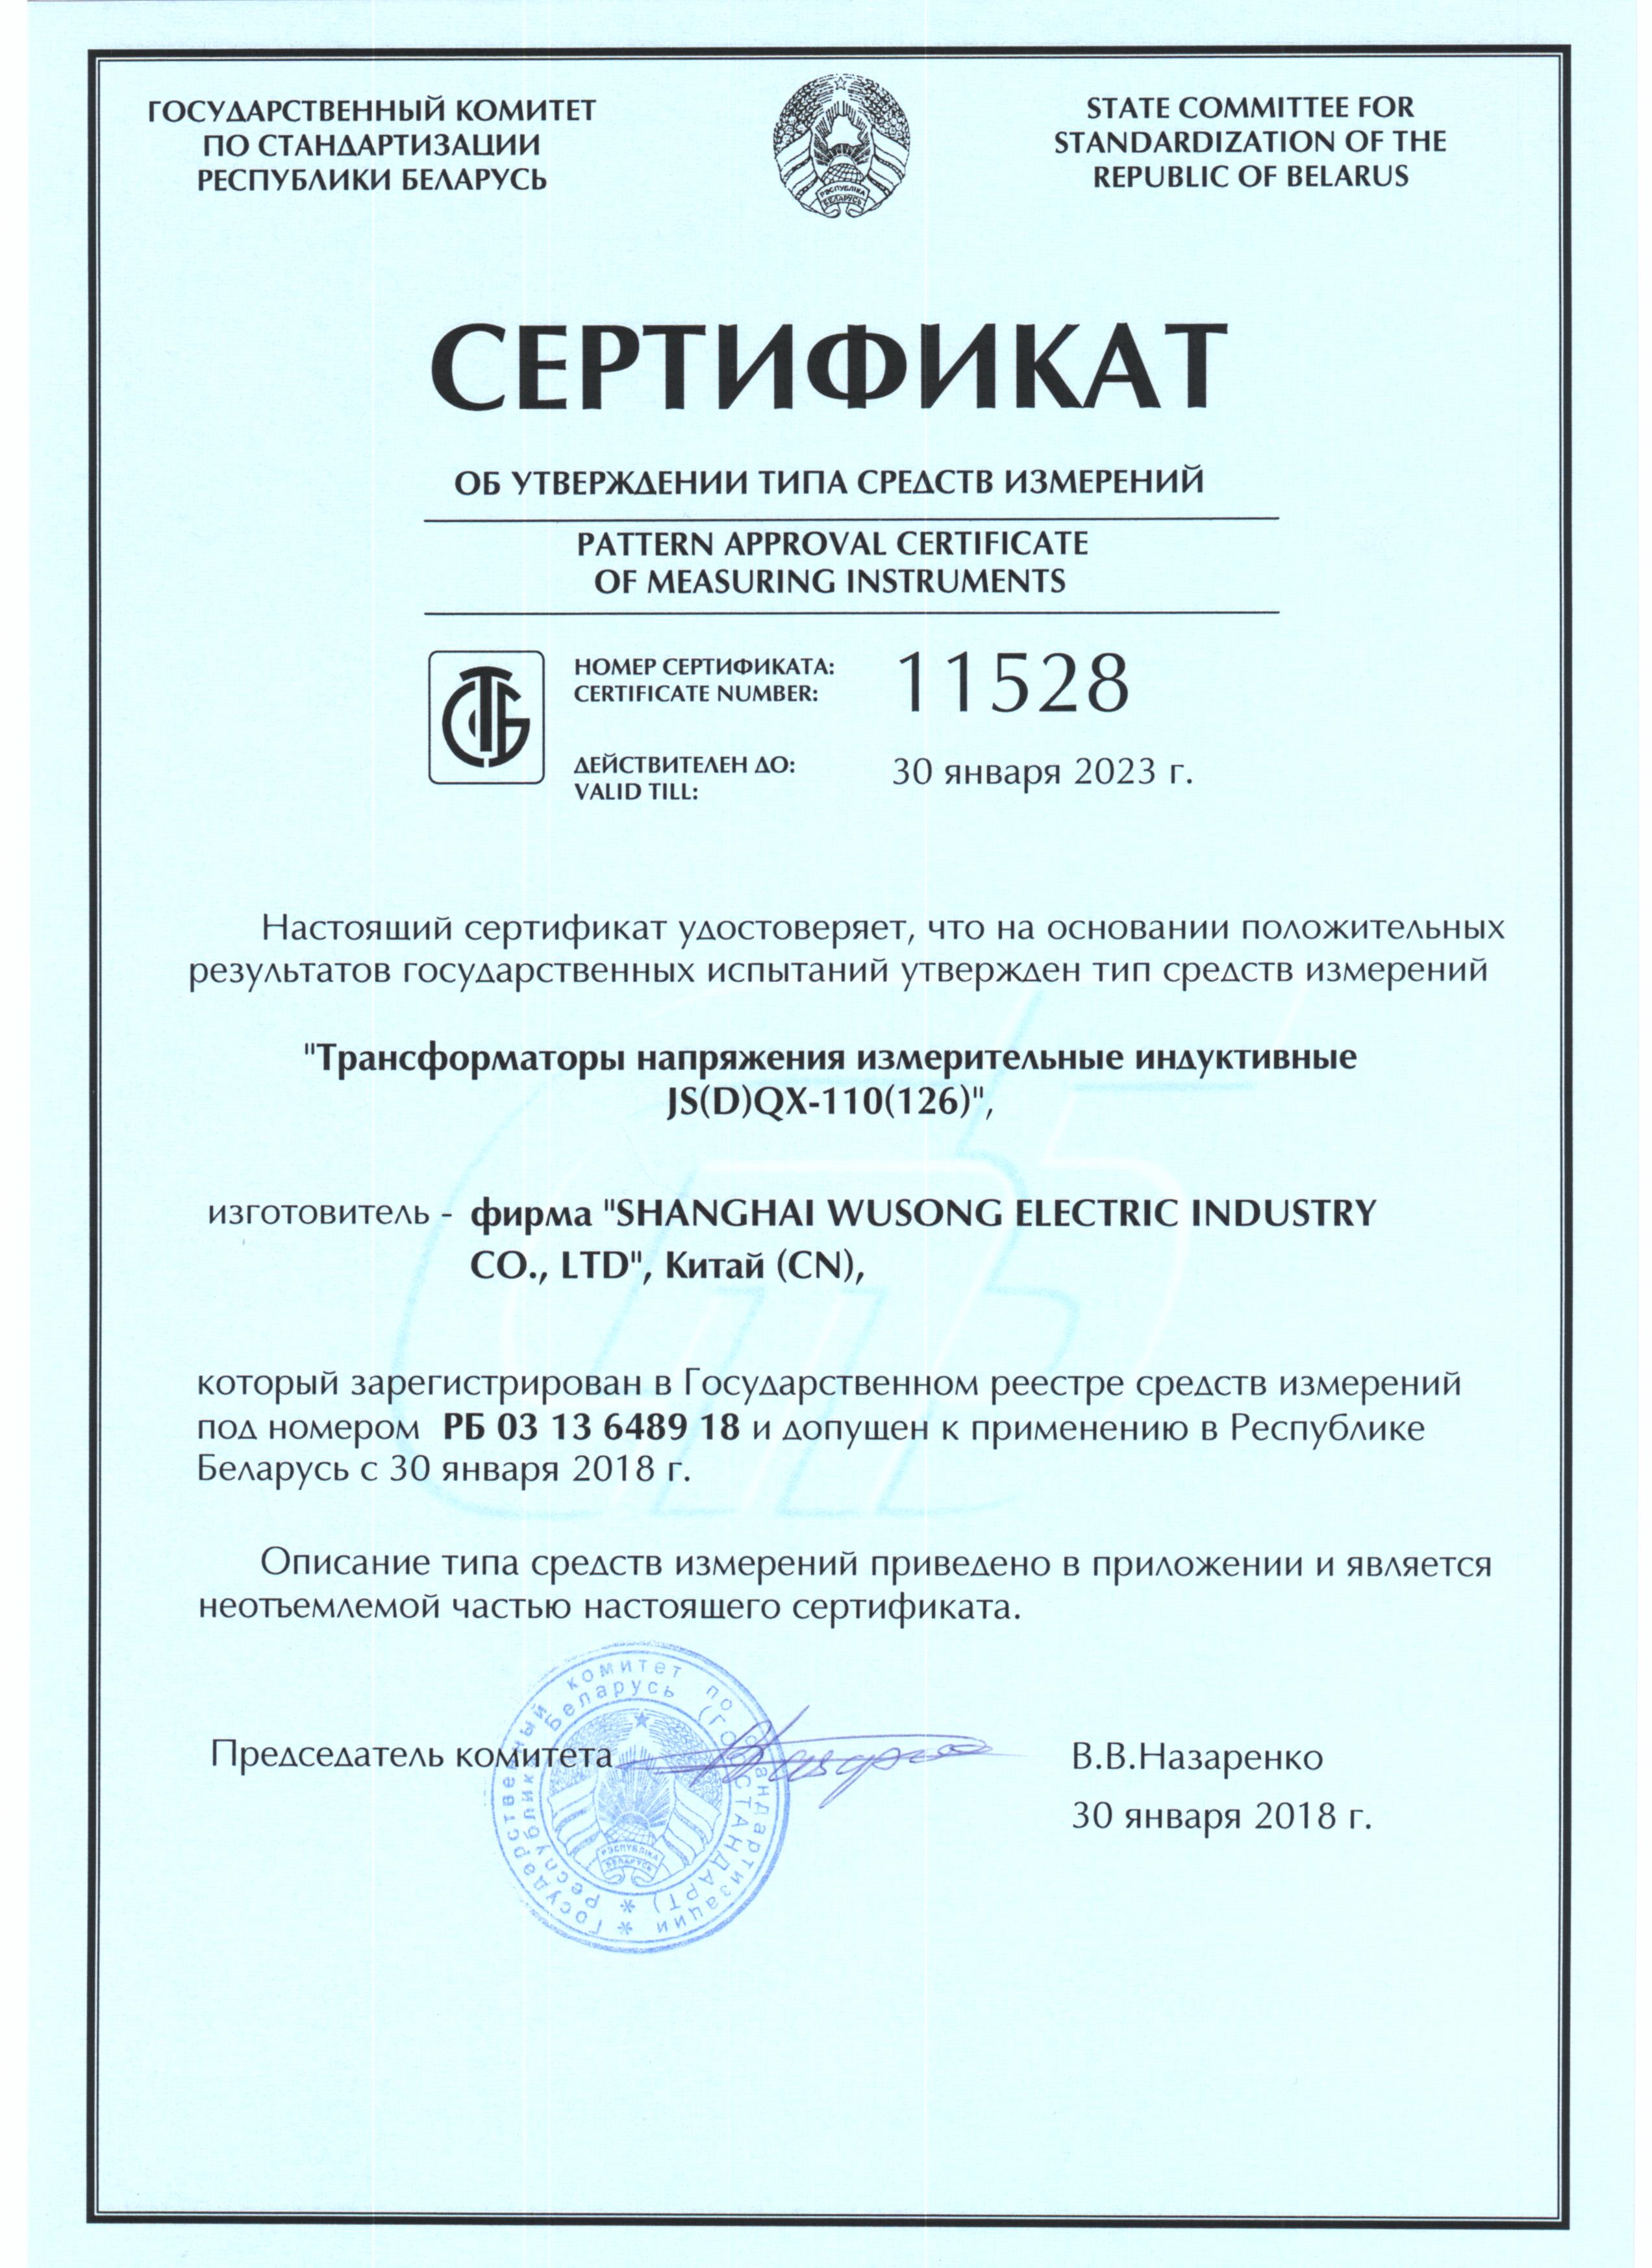 俄罗斯认证-PT.jpg